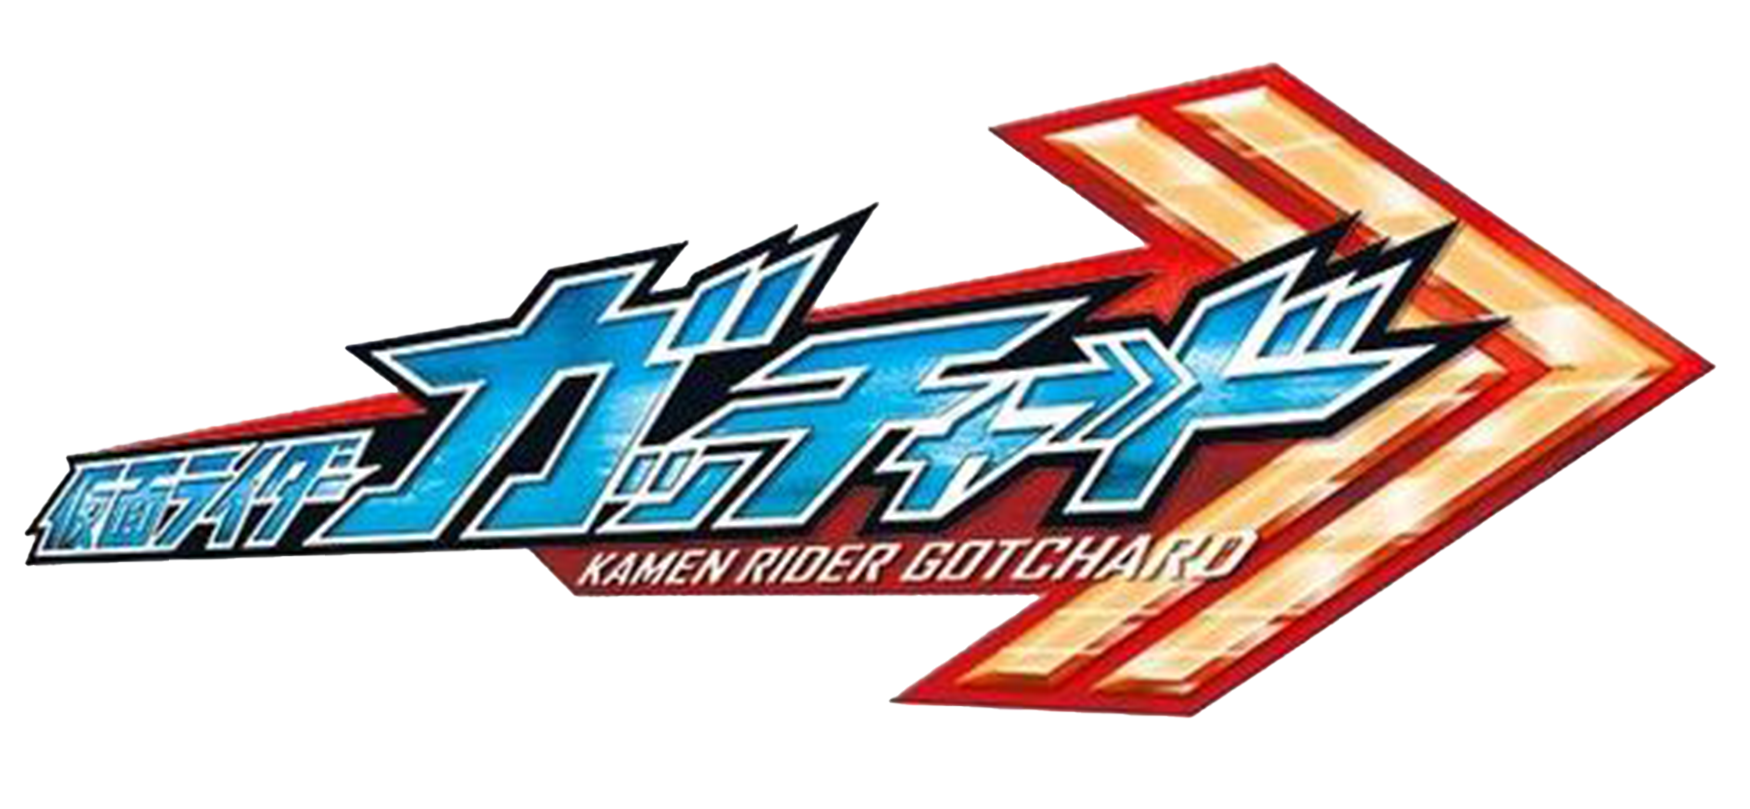 假面騎士Gotchard Logo.png